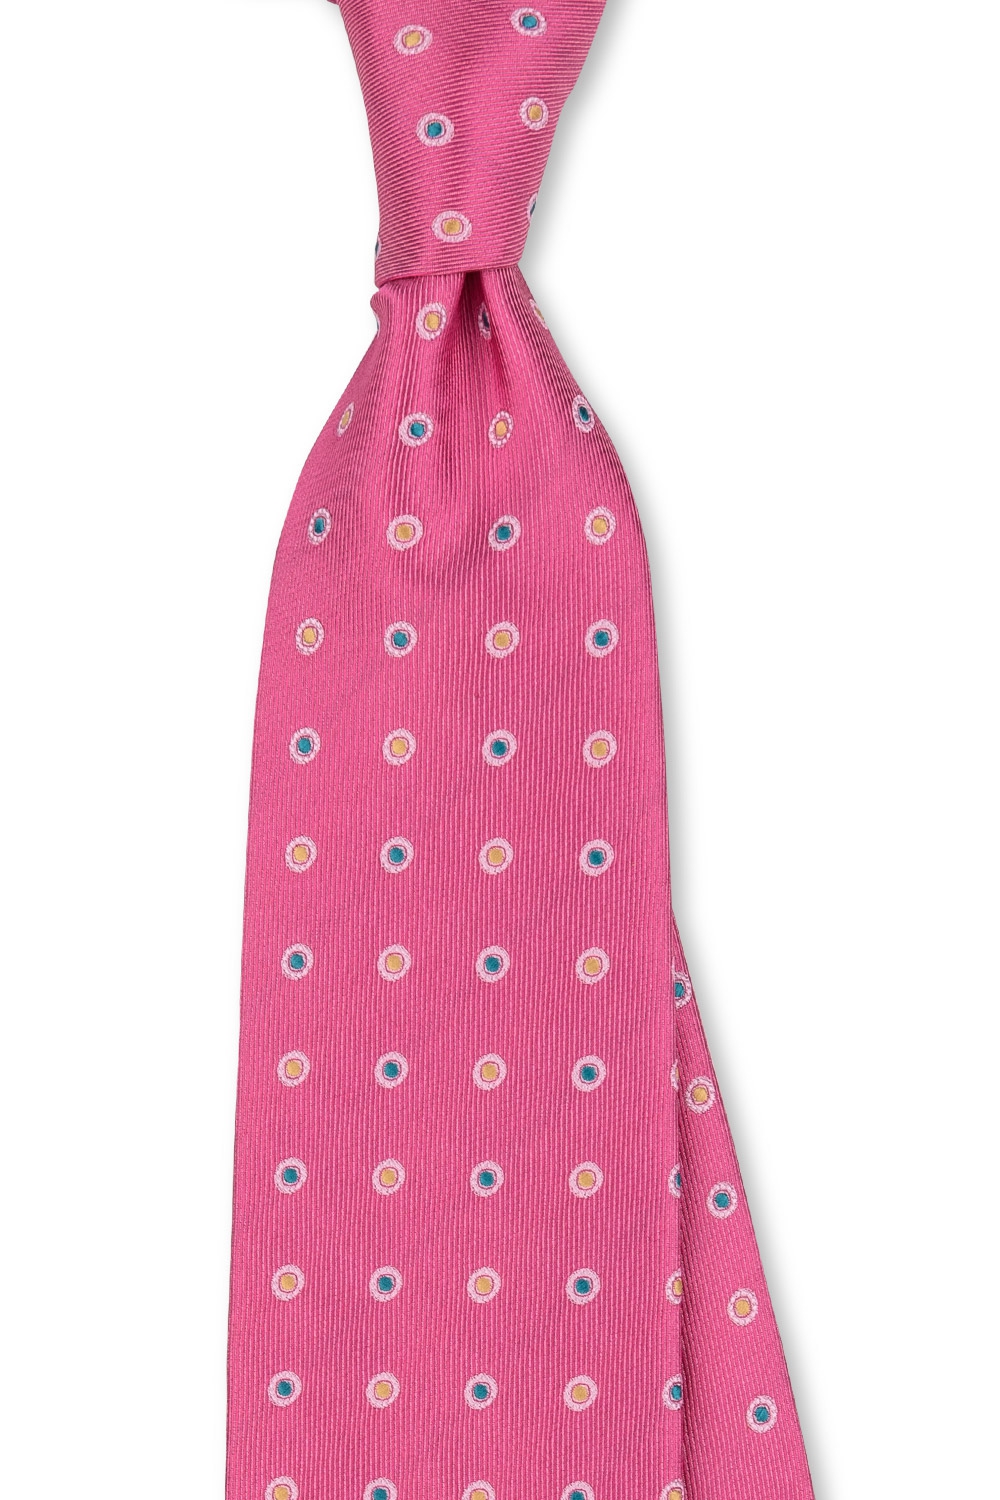 Cravata poliester roz cu buline 2